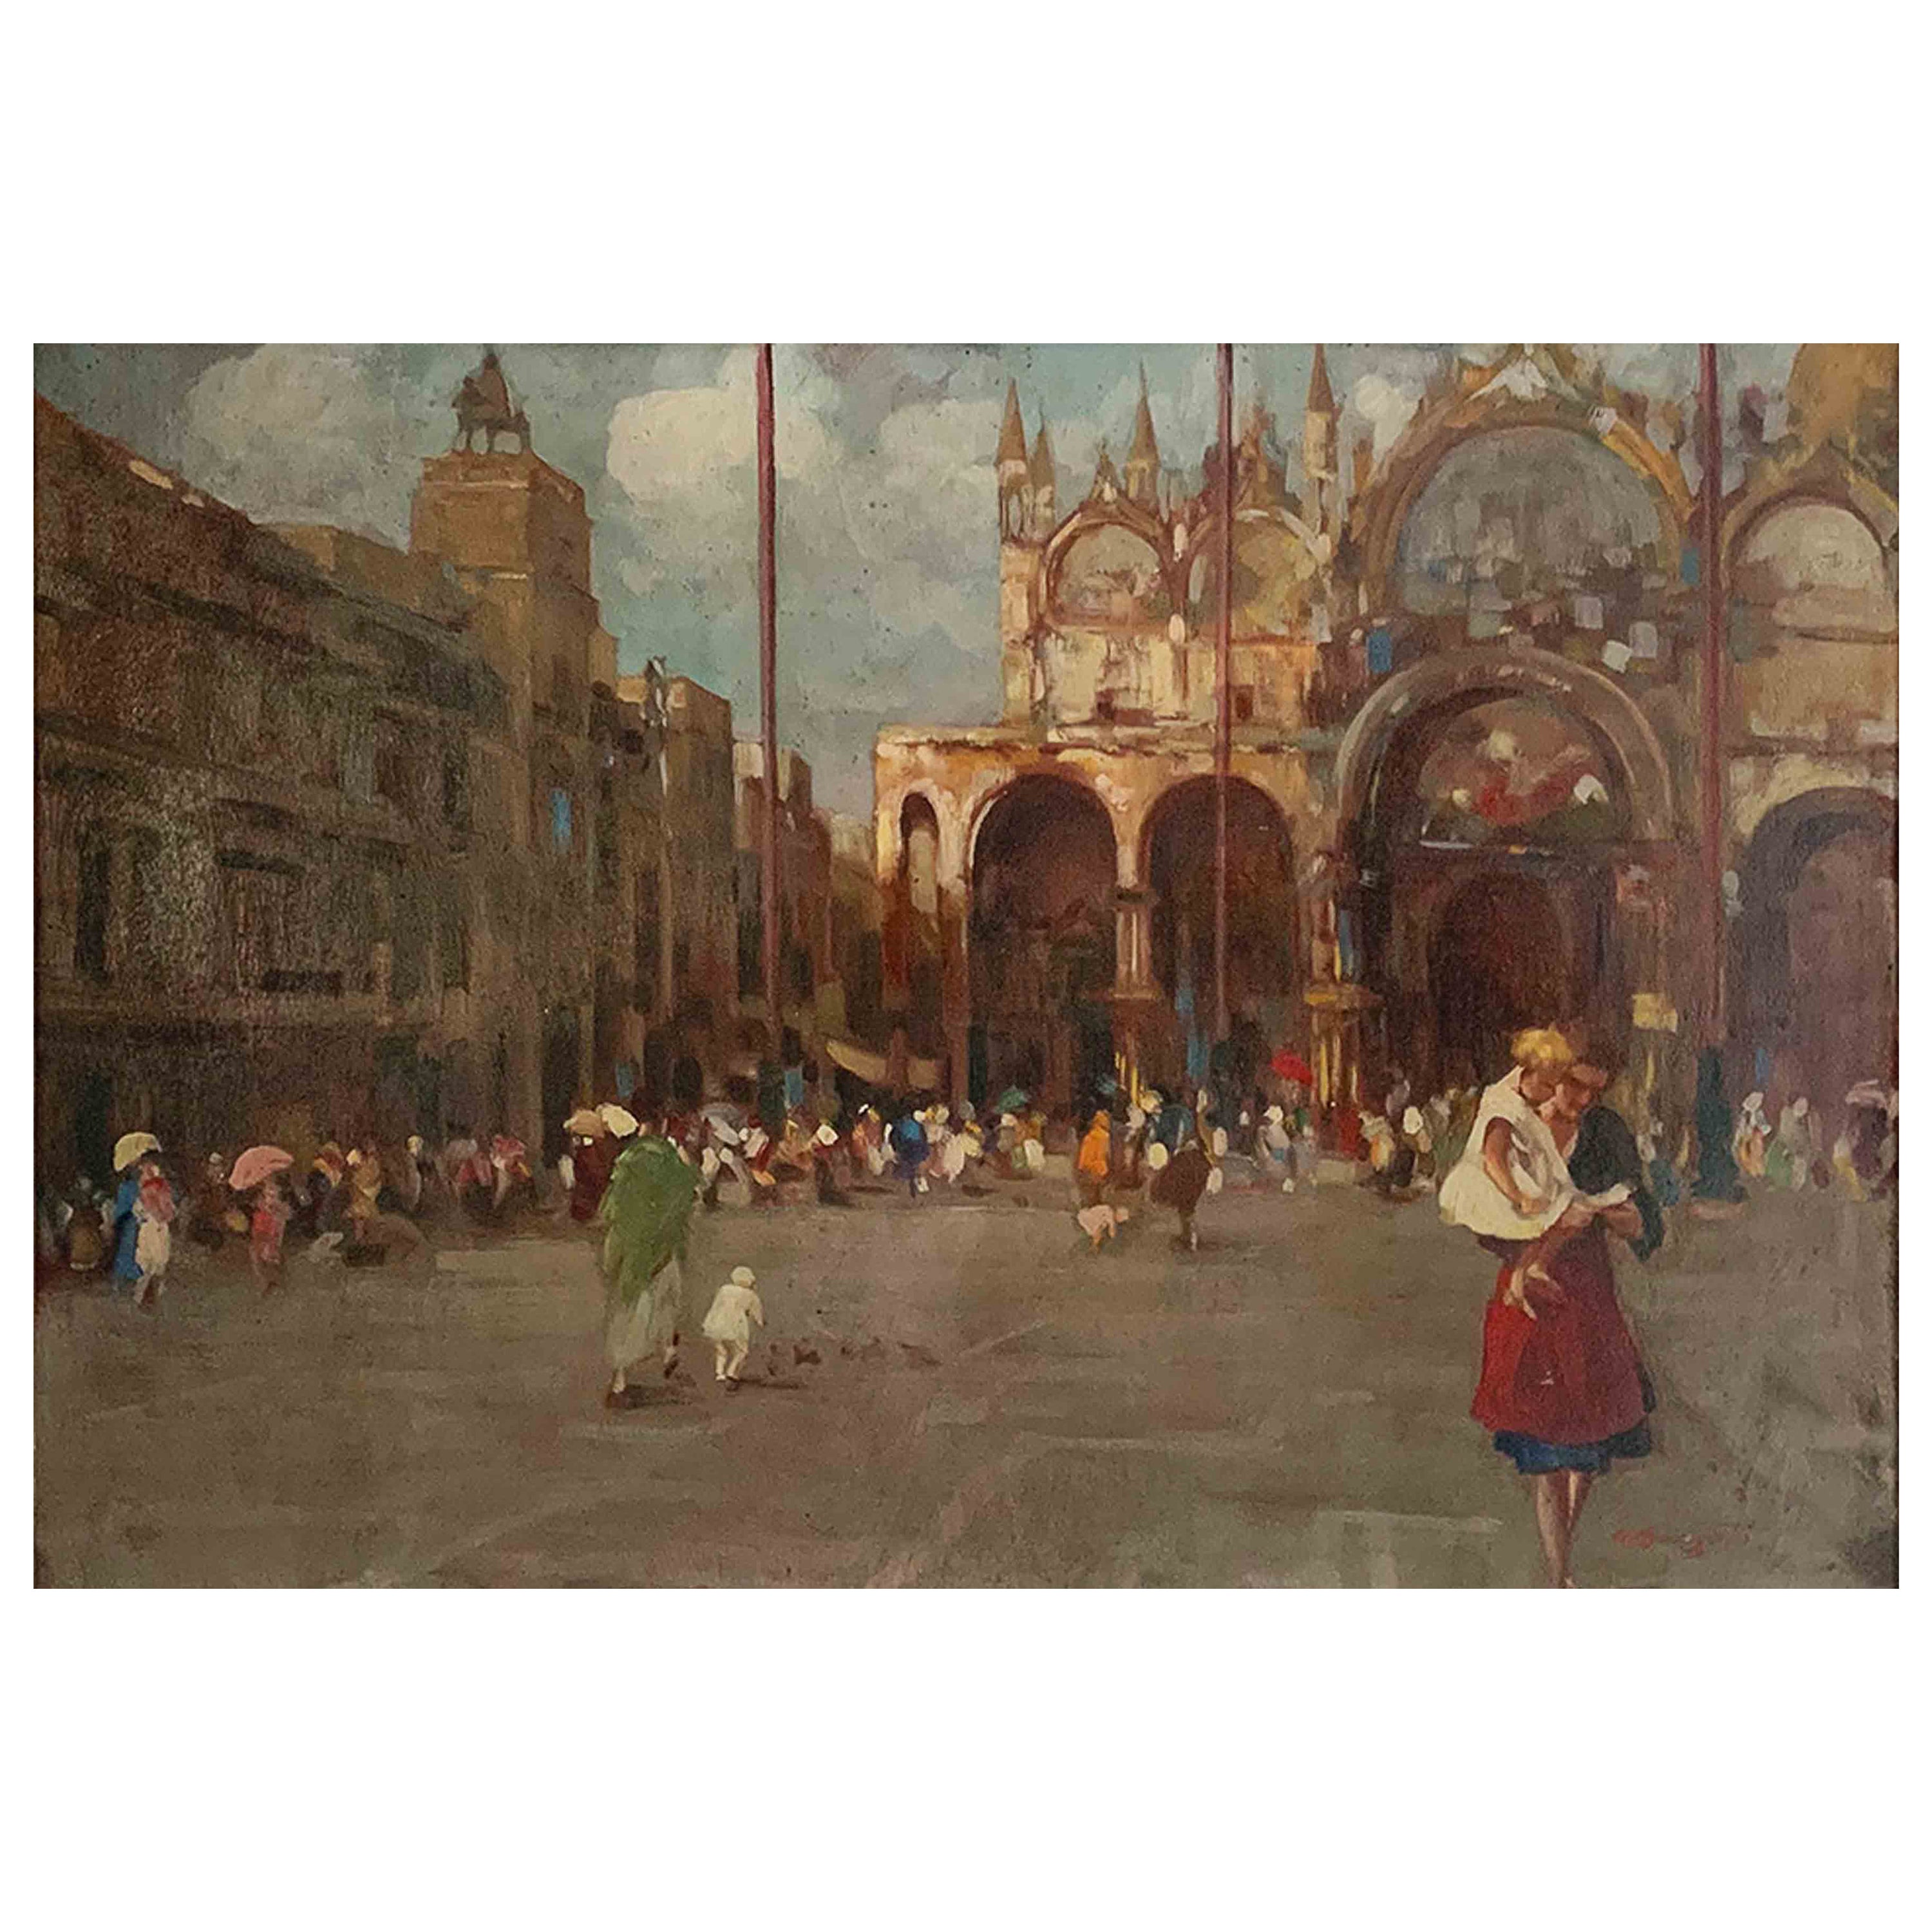 Bozzato Attilio Achille '1886 -1954' "Saint Mark's Square in Venice" Panel